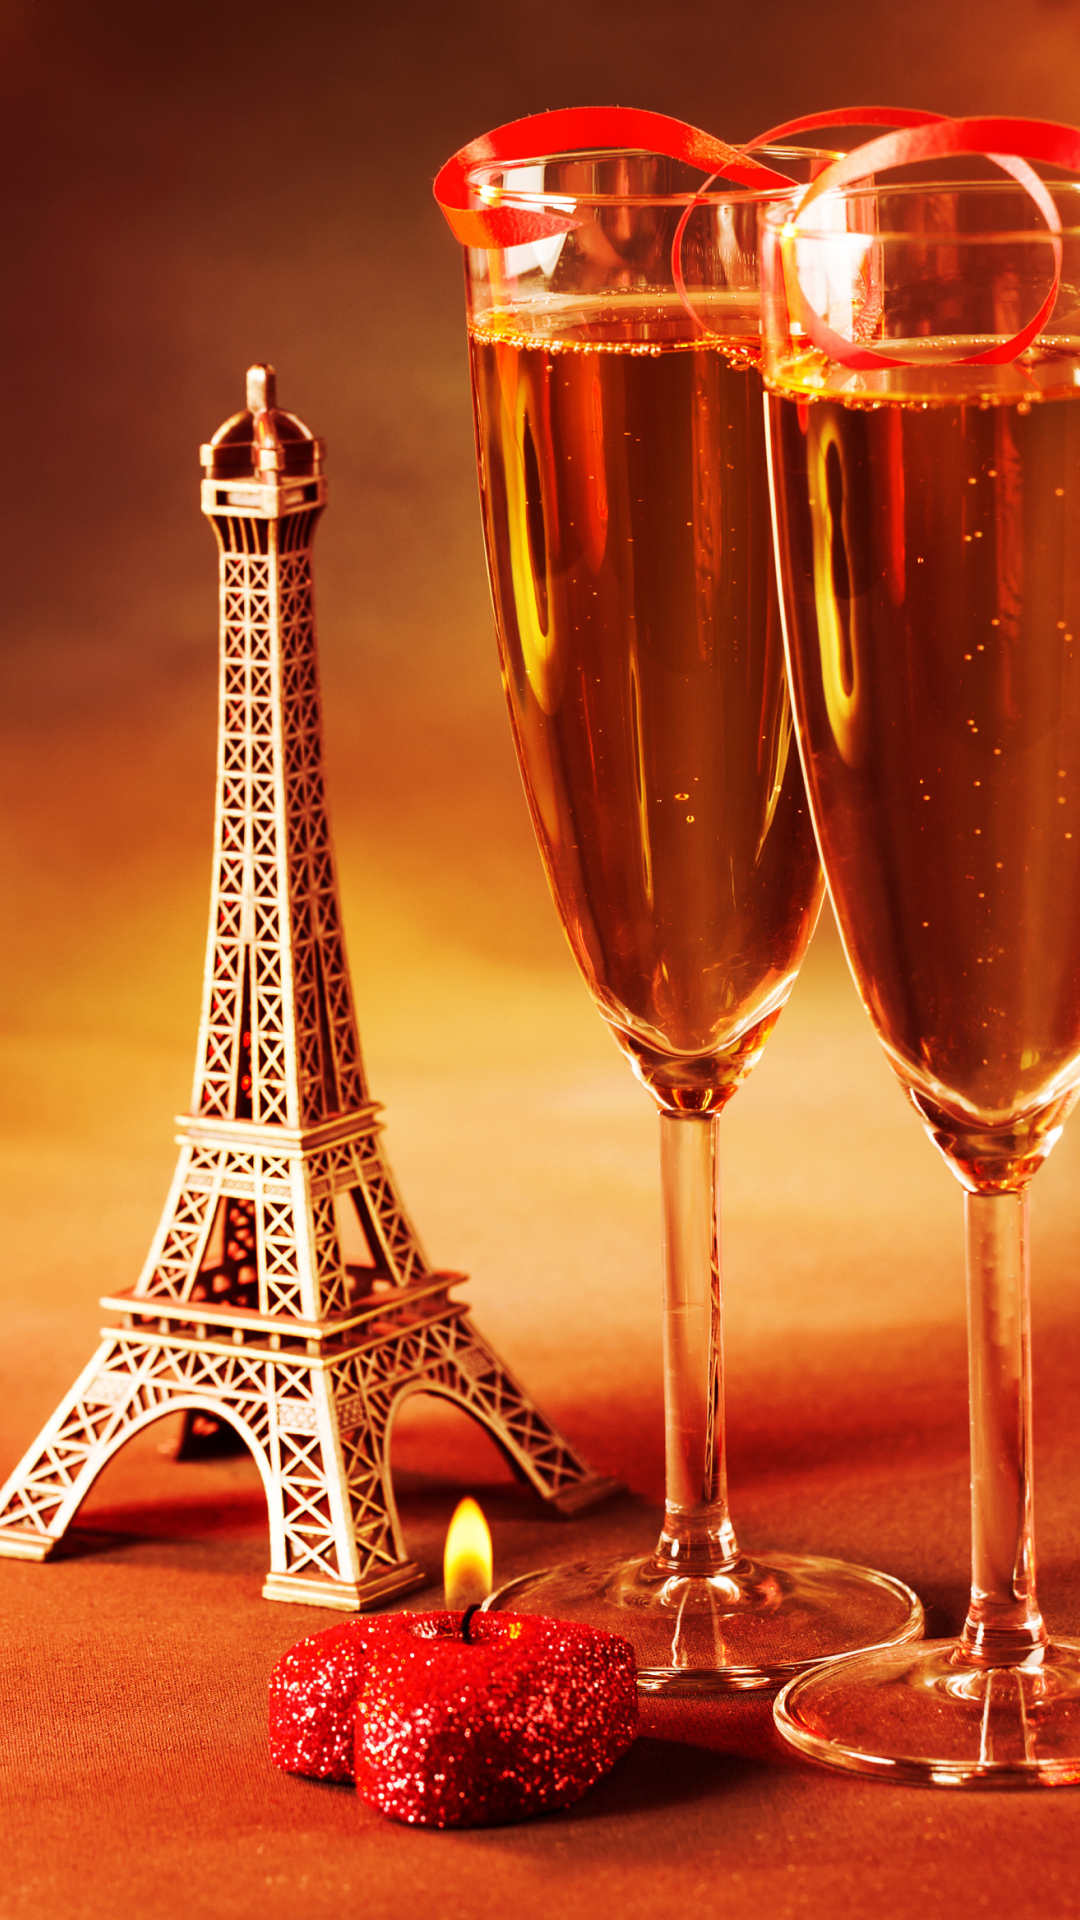 Das Paris Mini Eiffel Tower And Champagne Wallpaper 1080x1920